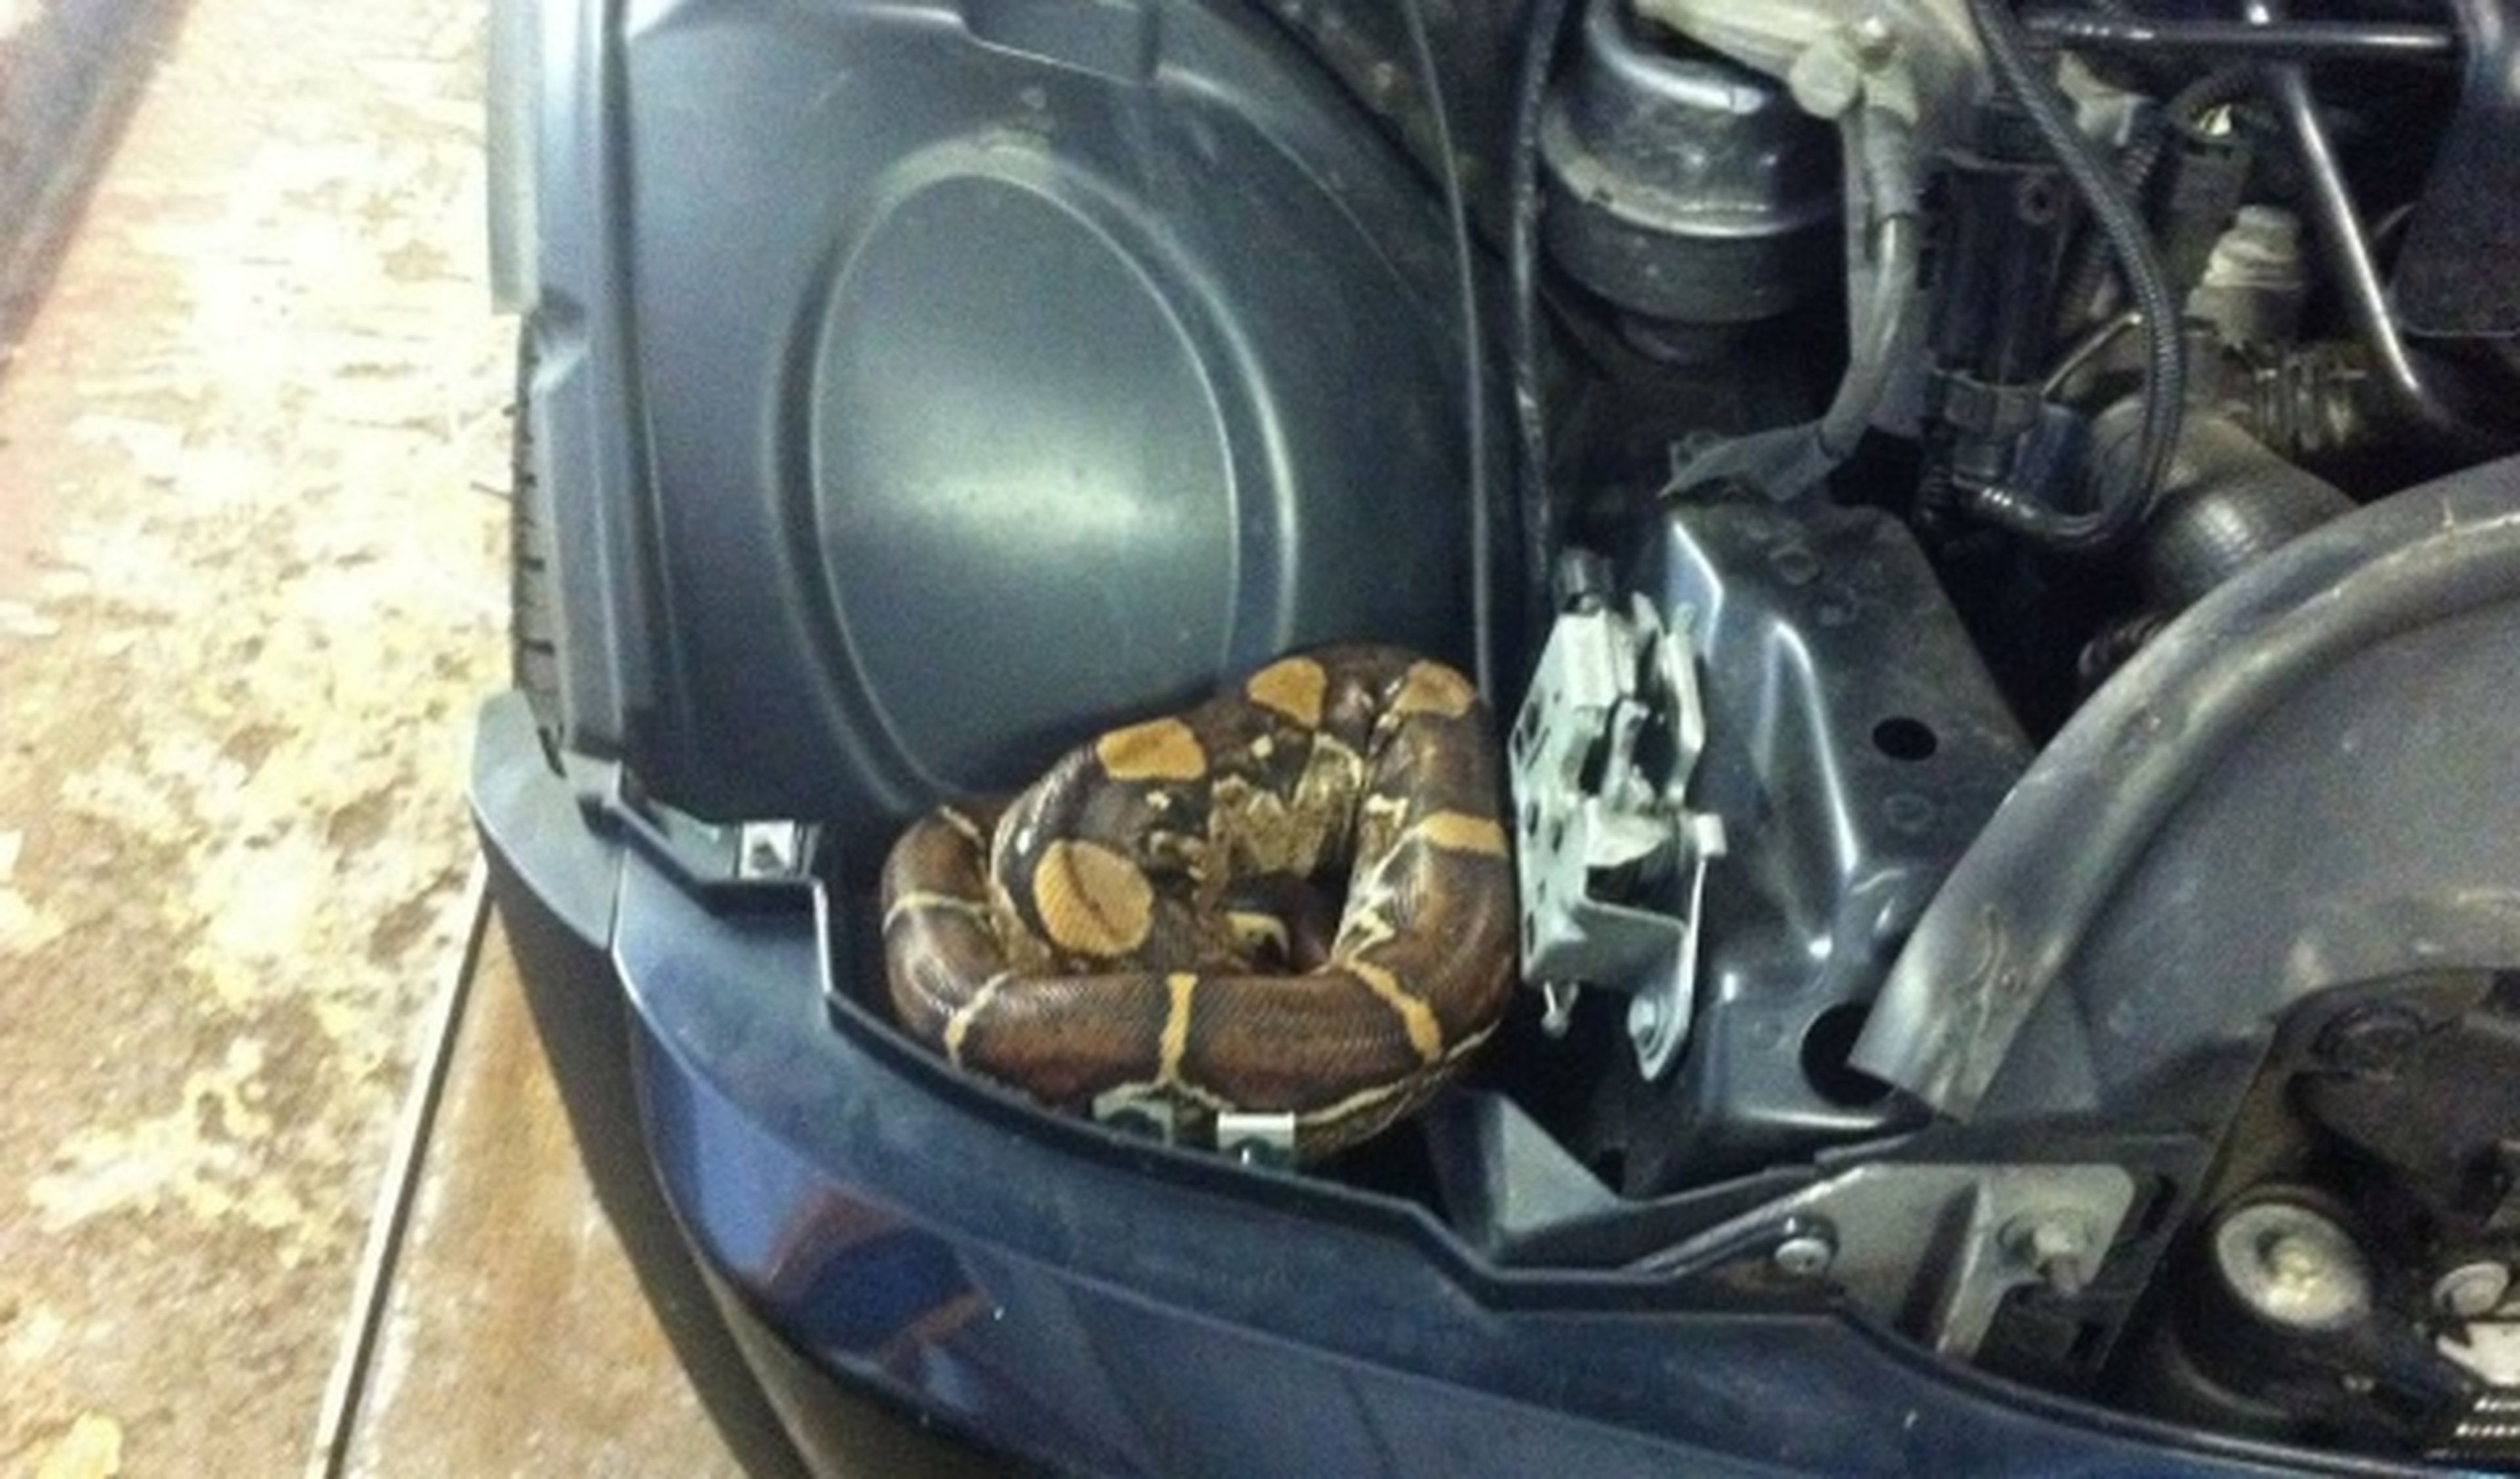 Se encuentra una Boa constrictor bajo el capó del coche